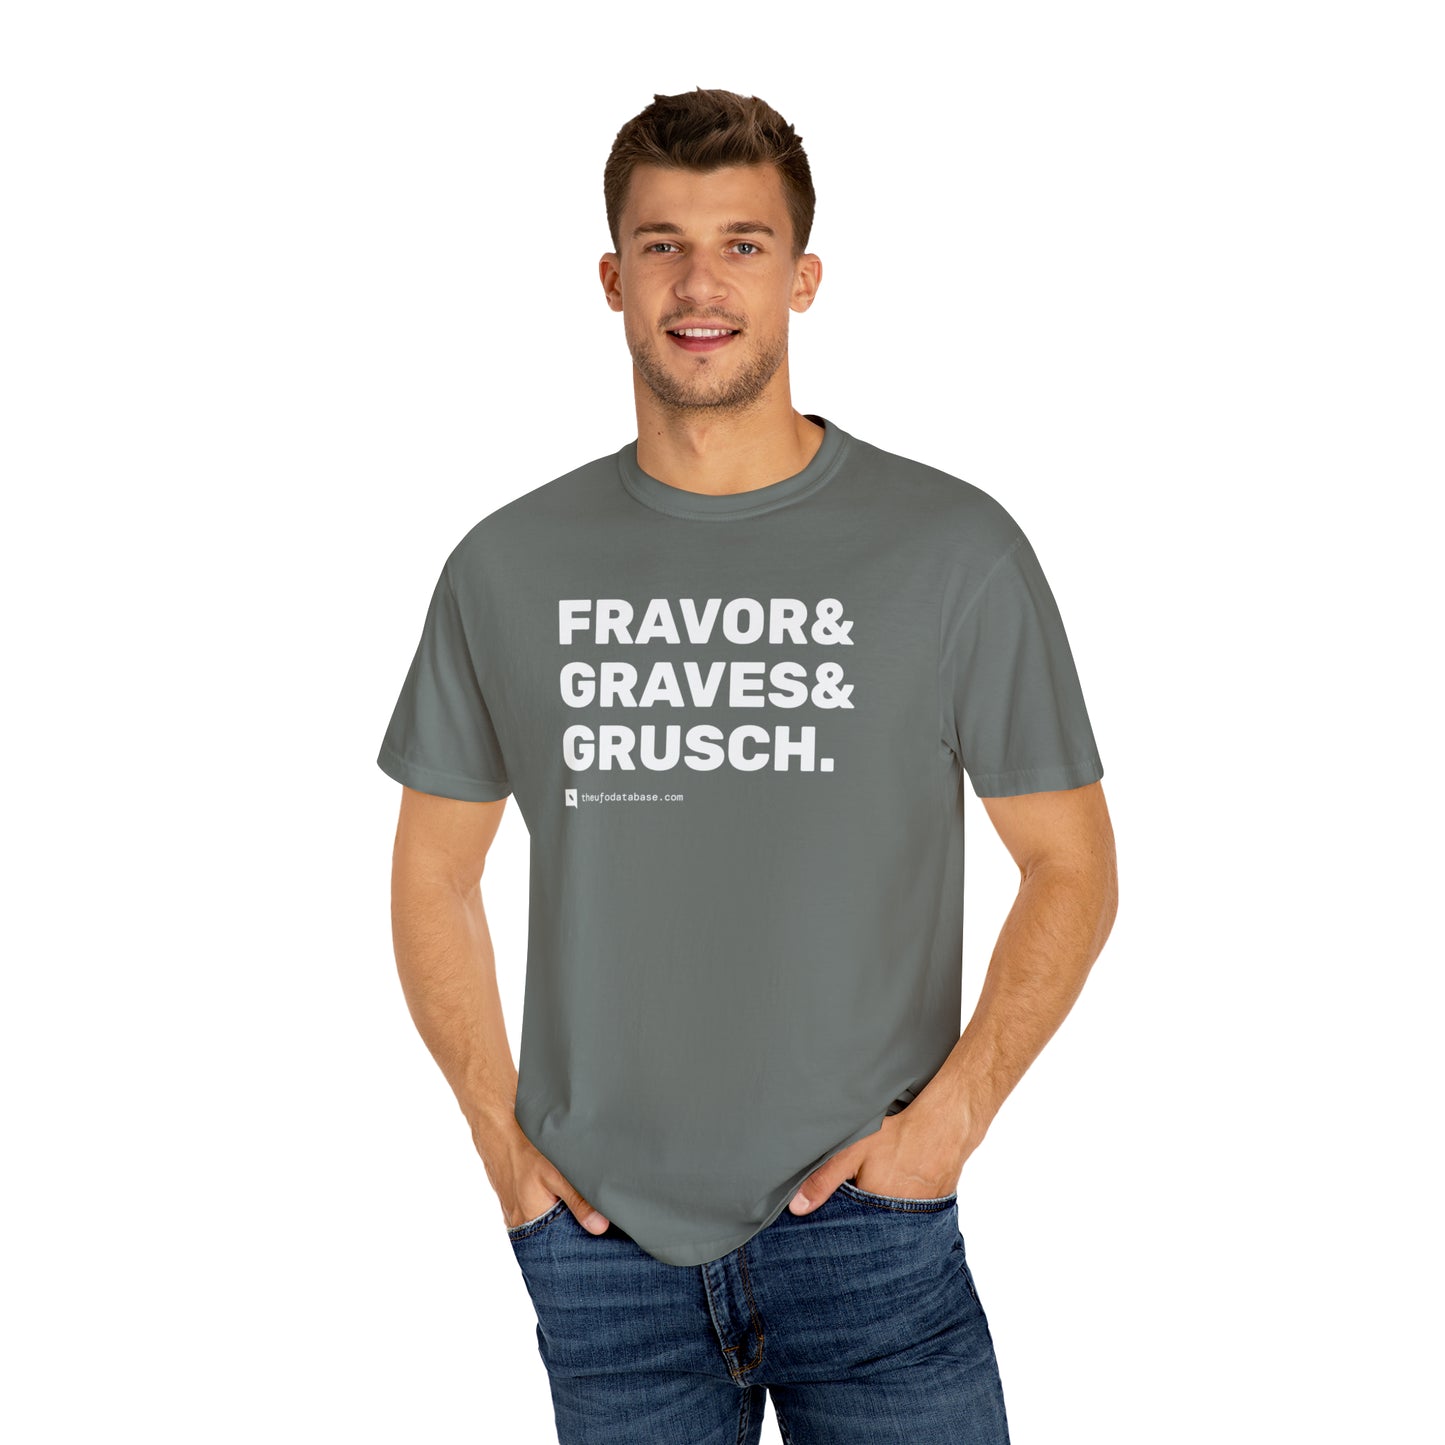 Fravor, Graves, Grusch T-Shirt